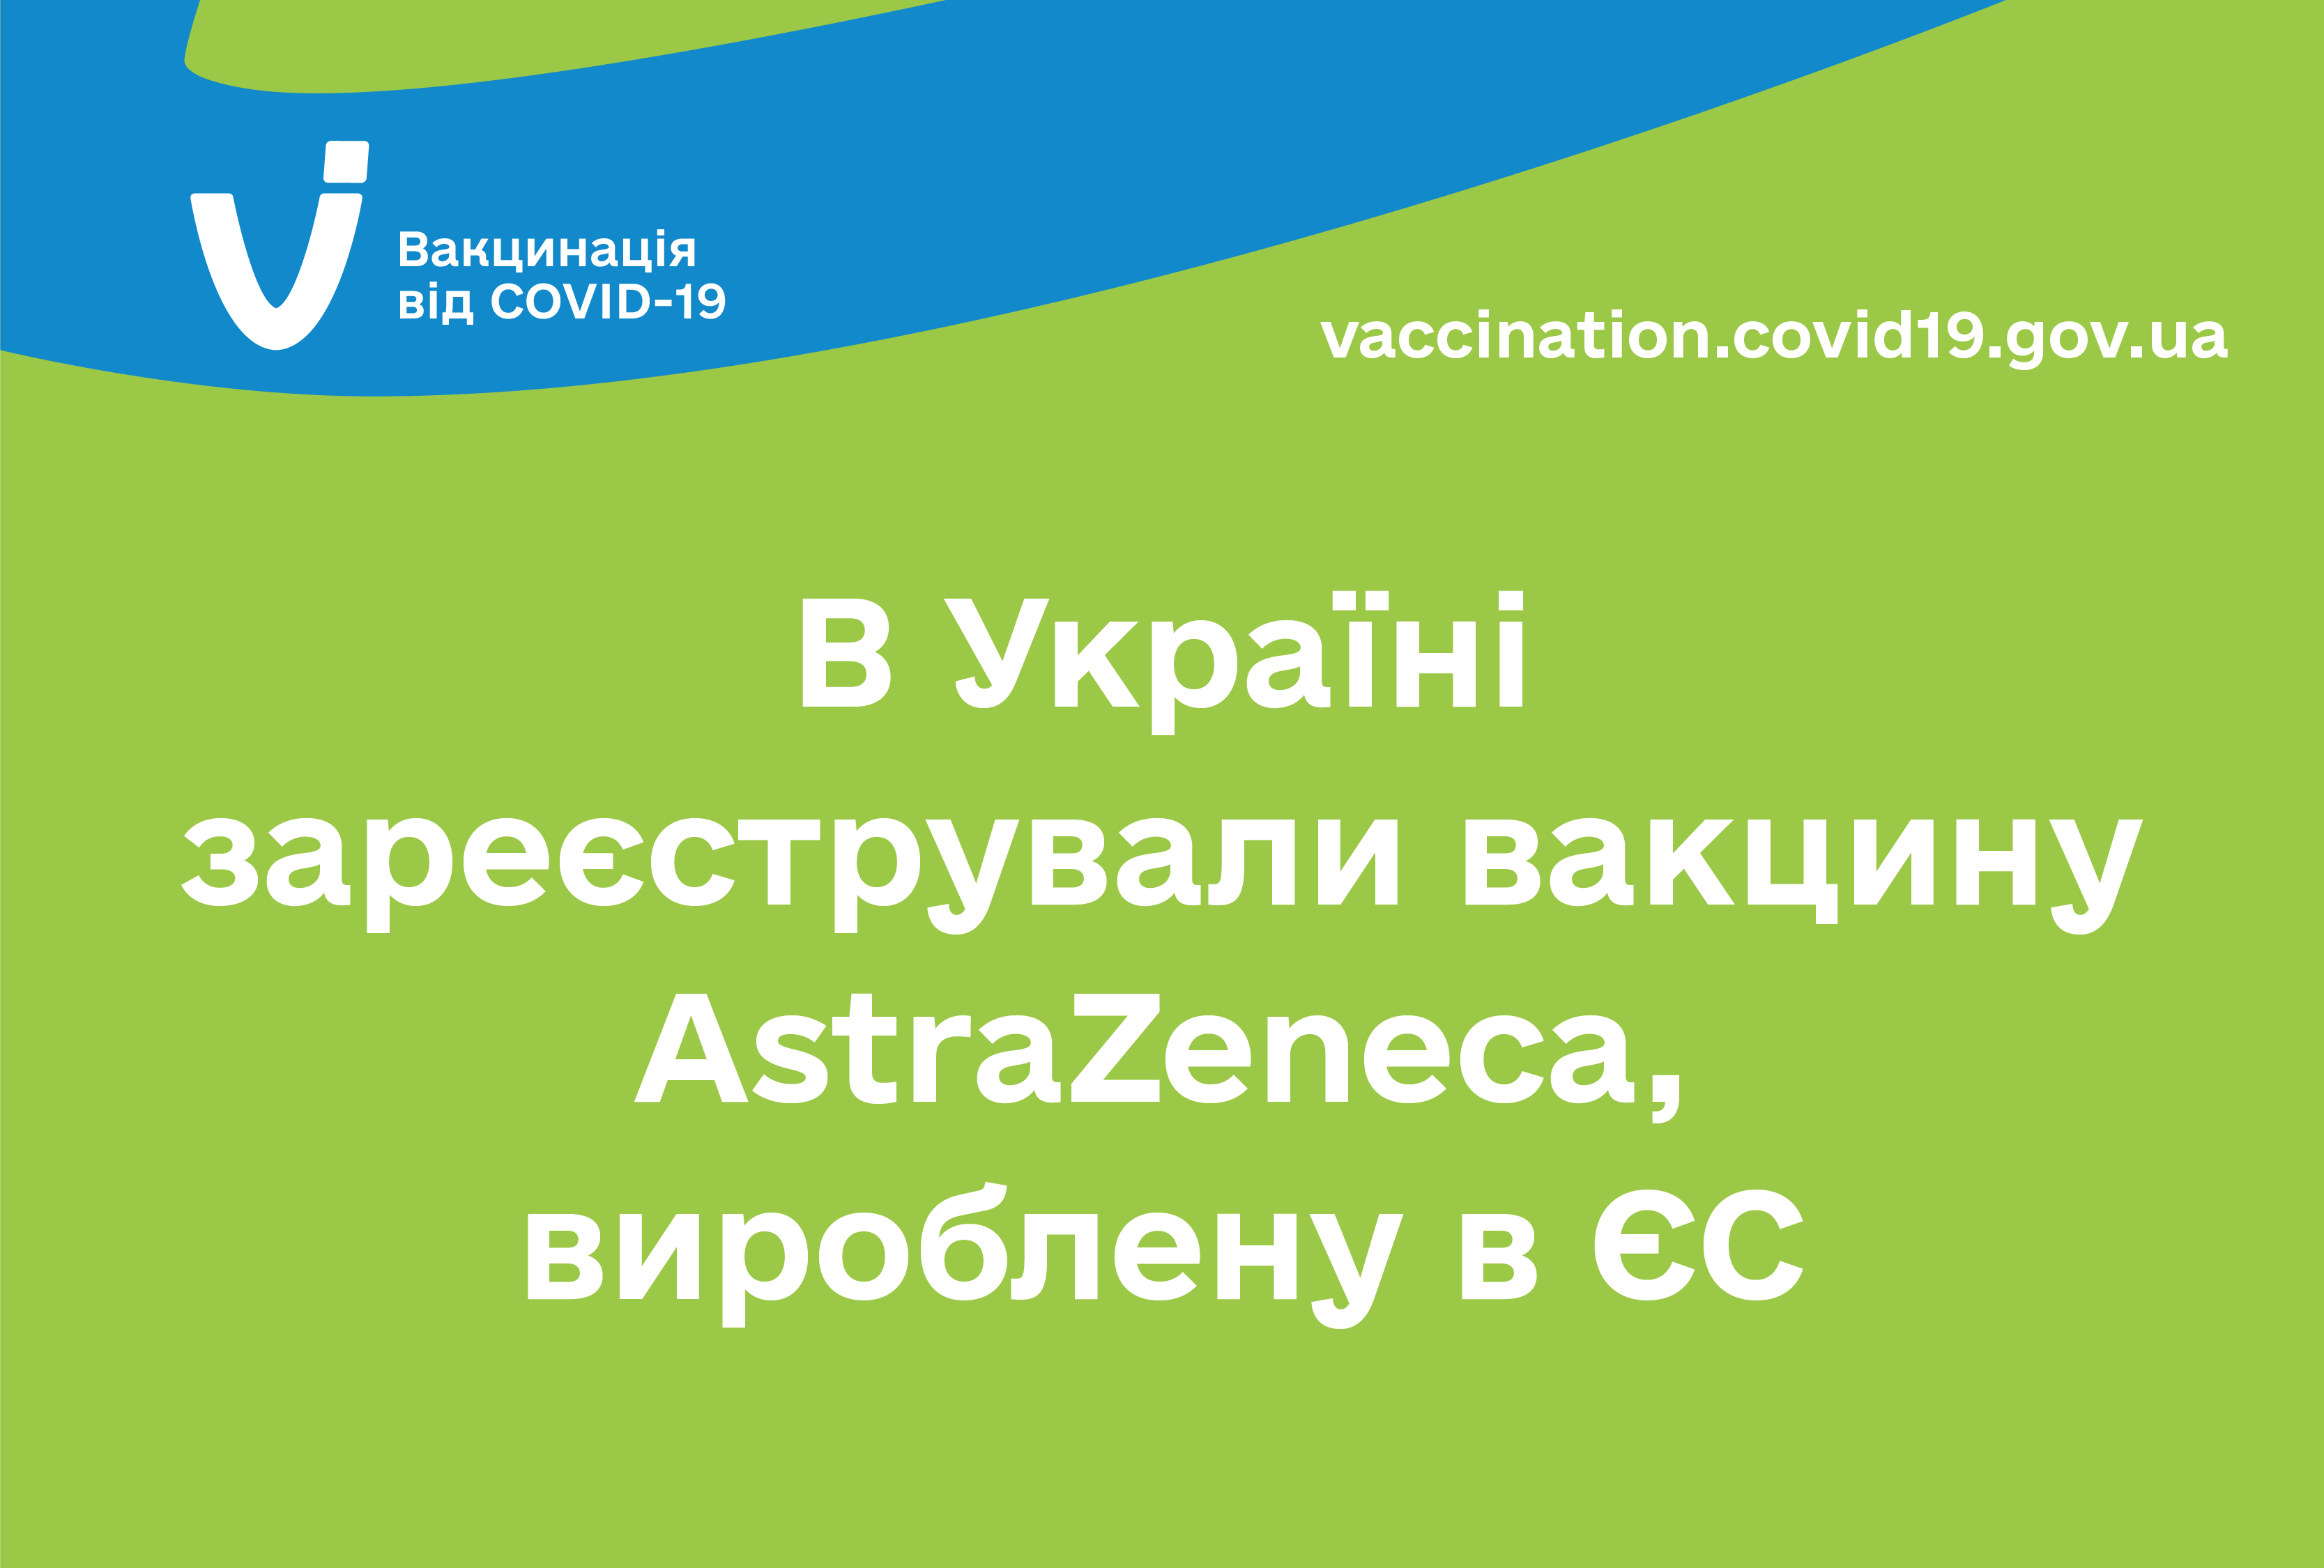 В Украине зарегистрировали вакцину AstraZeneca, произведенную в ЕС